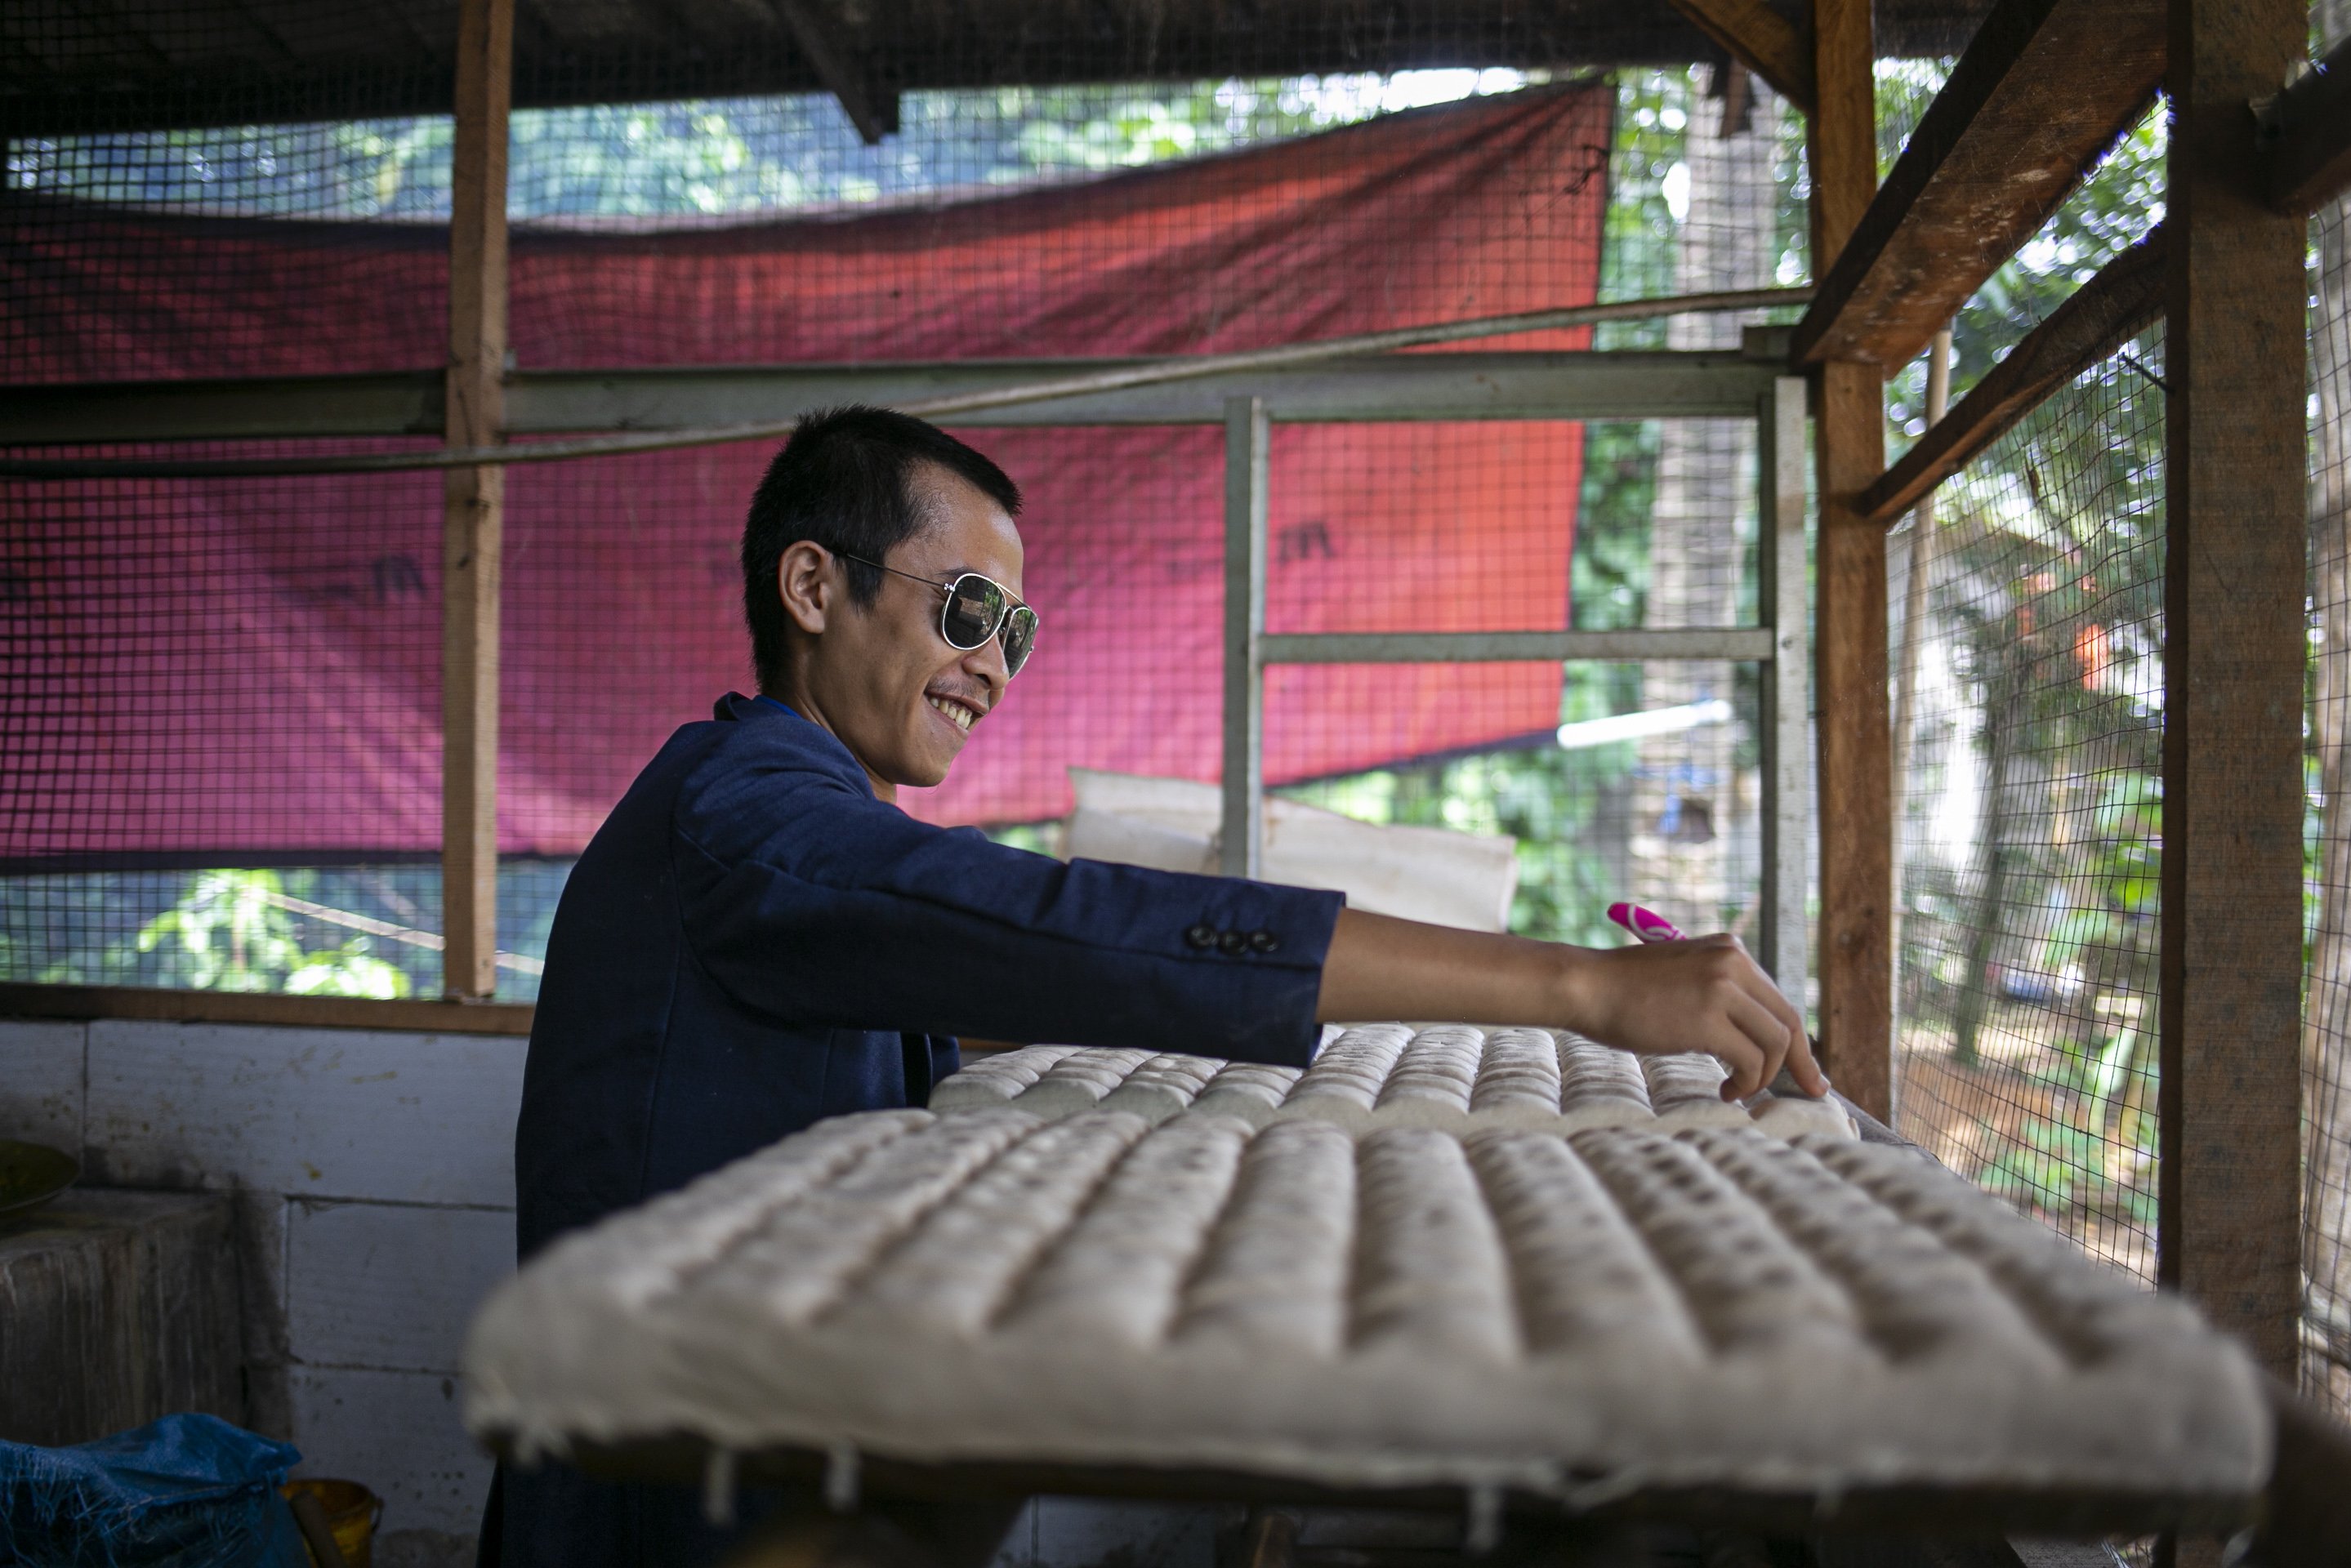 Sejumlah pekerja yang mengenakan busana formal kemeja, jas dan berdasi seperti pekerja kantor memproduksi tahu di Sukaraja, Kabupaten Bogor, Kamis (17/12/2020). Ide ini dilakukan untuk menunjukkan bahwa pekerja industri rumahan juga bisa bekerja dengan rapih dan bersih.